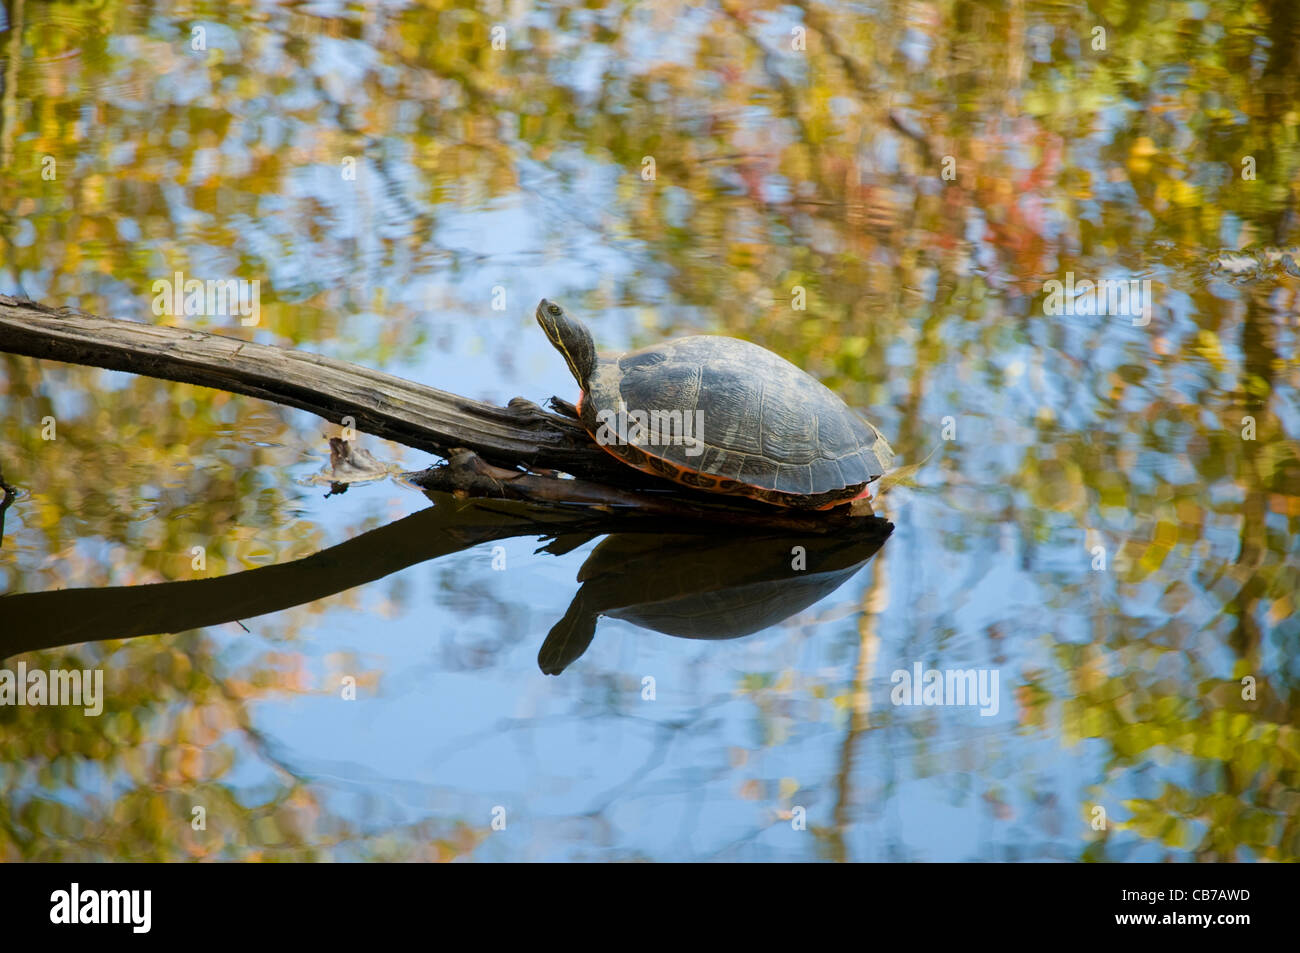 Assis sur une tortue petite bûche dans un ruisseau à l'automne Banque D'Images